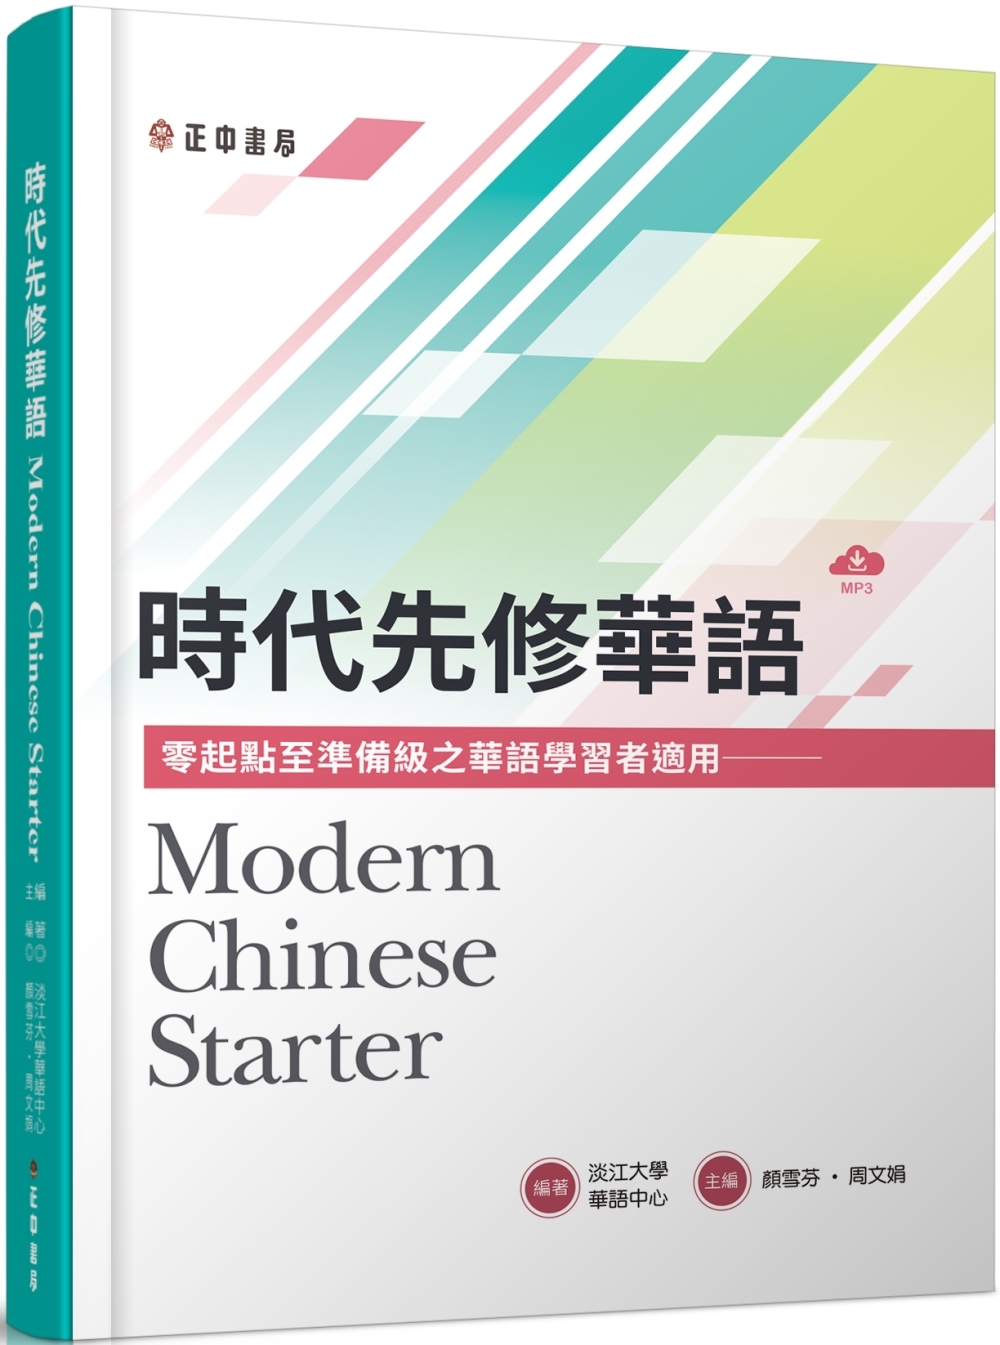 時代先修華語(可下載雲端MP3) Modern Chinese Starter